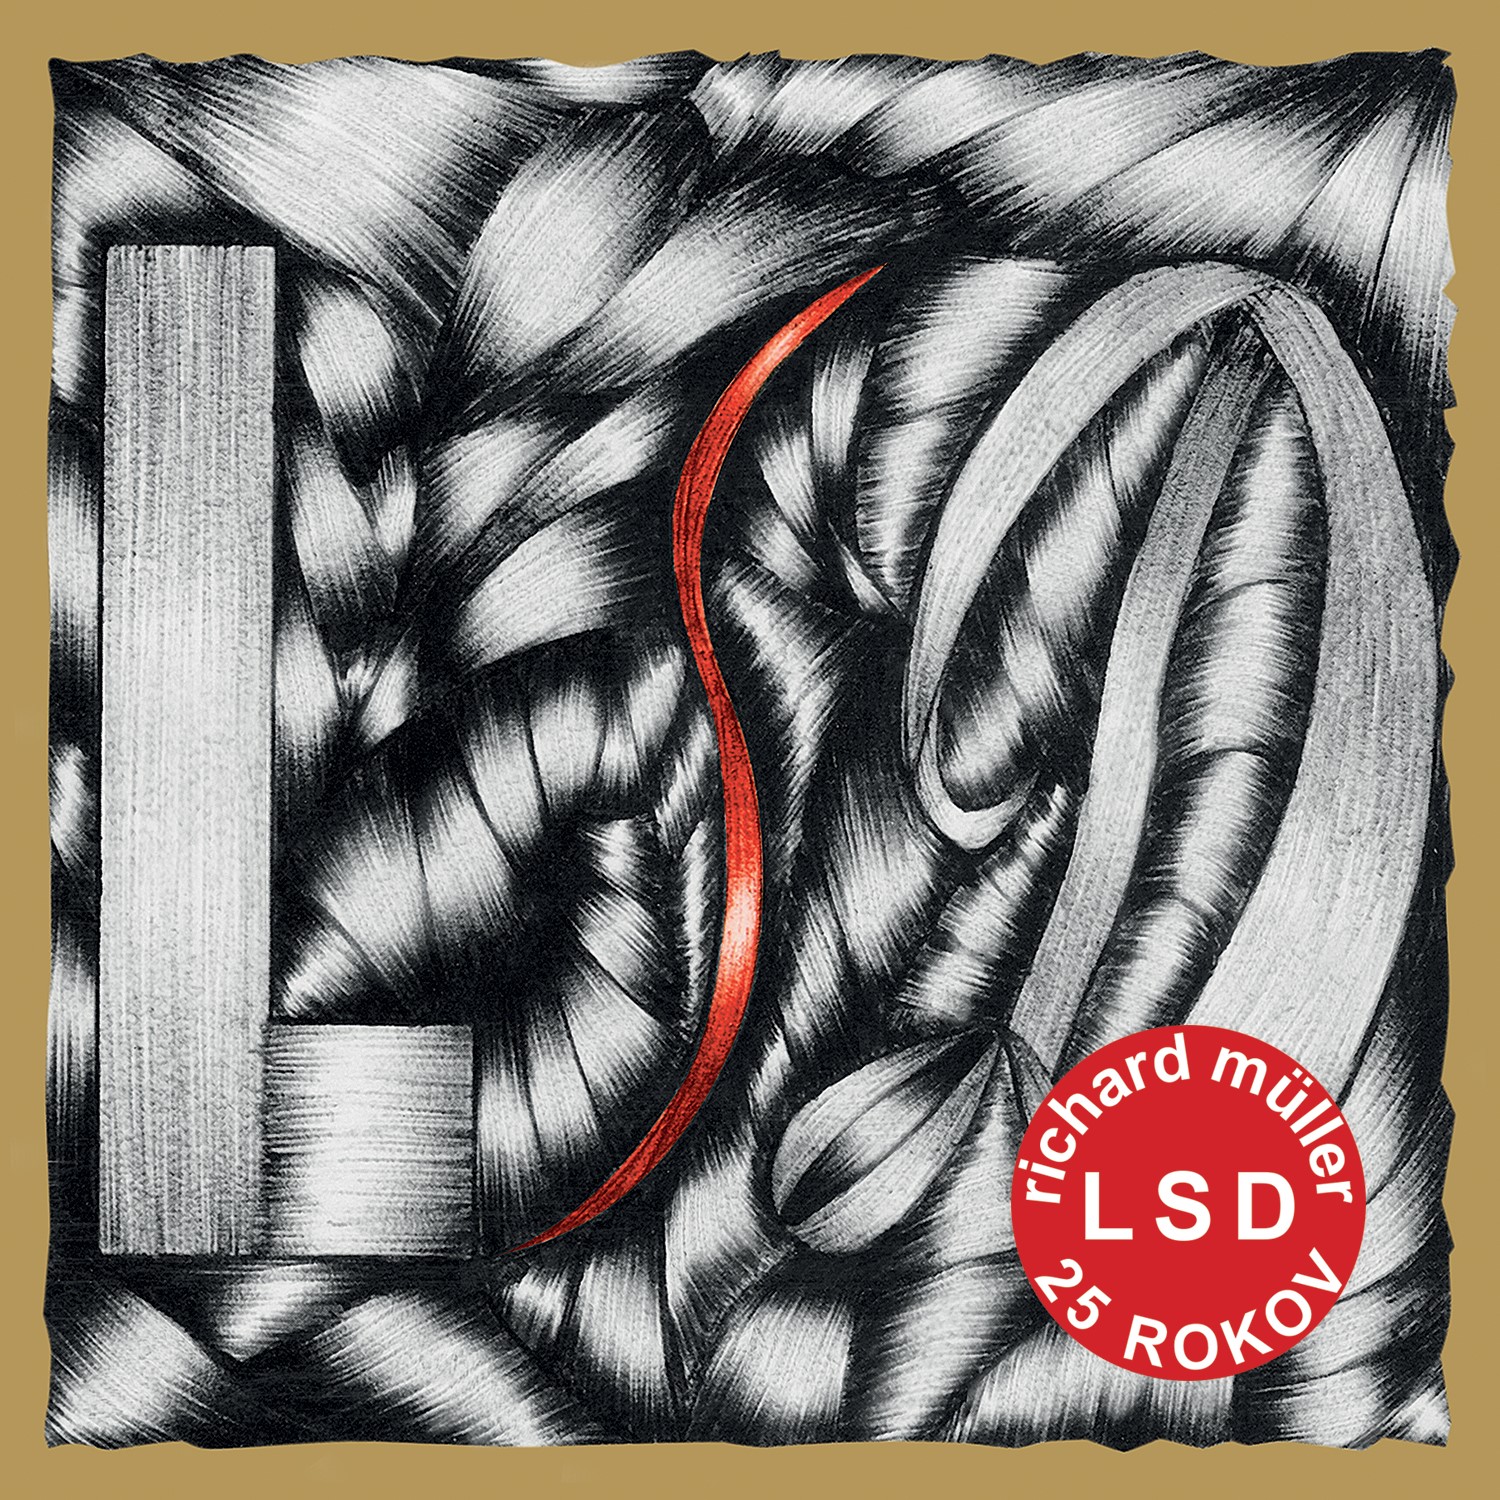 CD Shop - MULLER RICHARD LSD